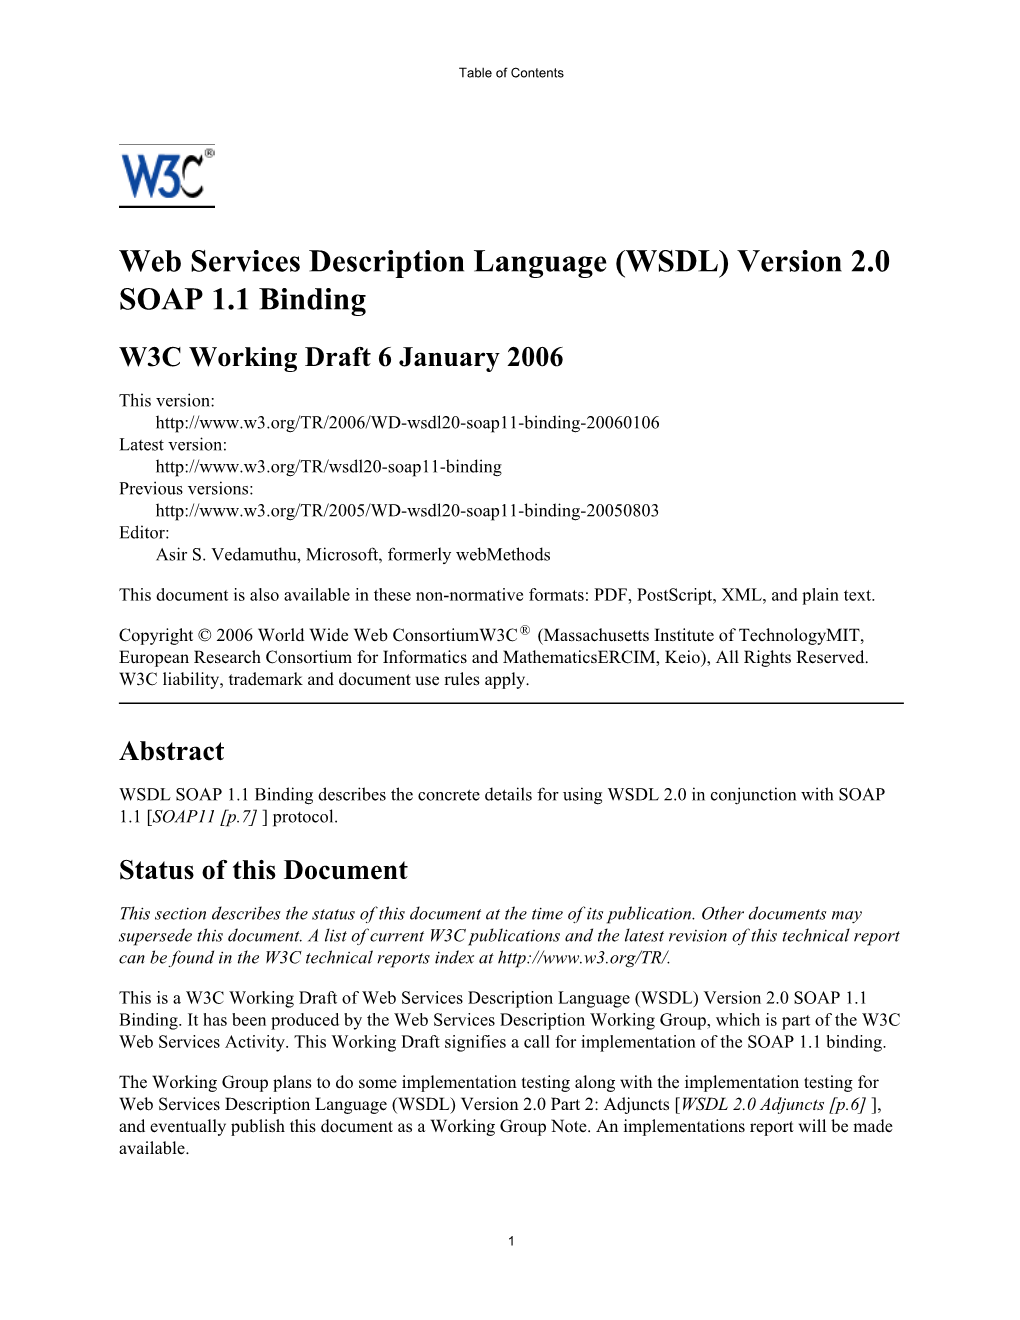 Web Services Description Language †WSDL‡ Version 2.0 SOAP 1.1